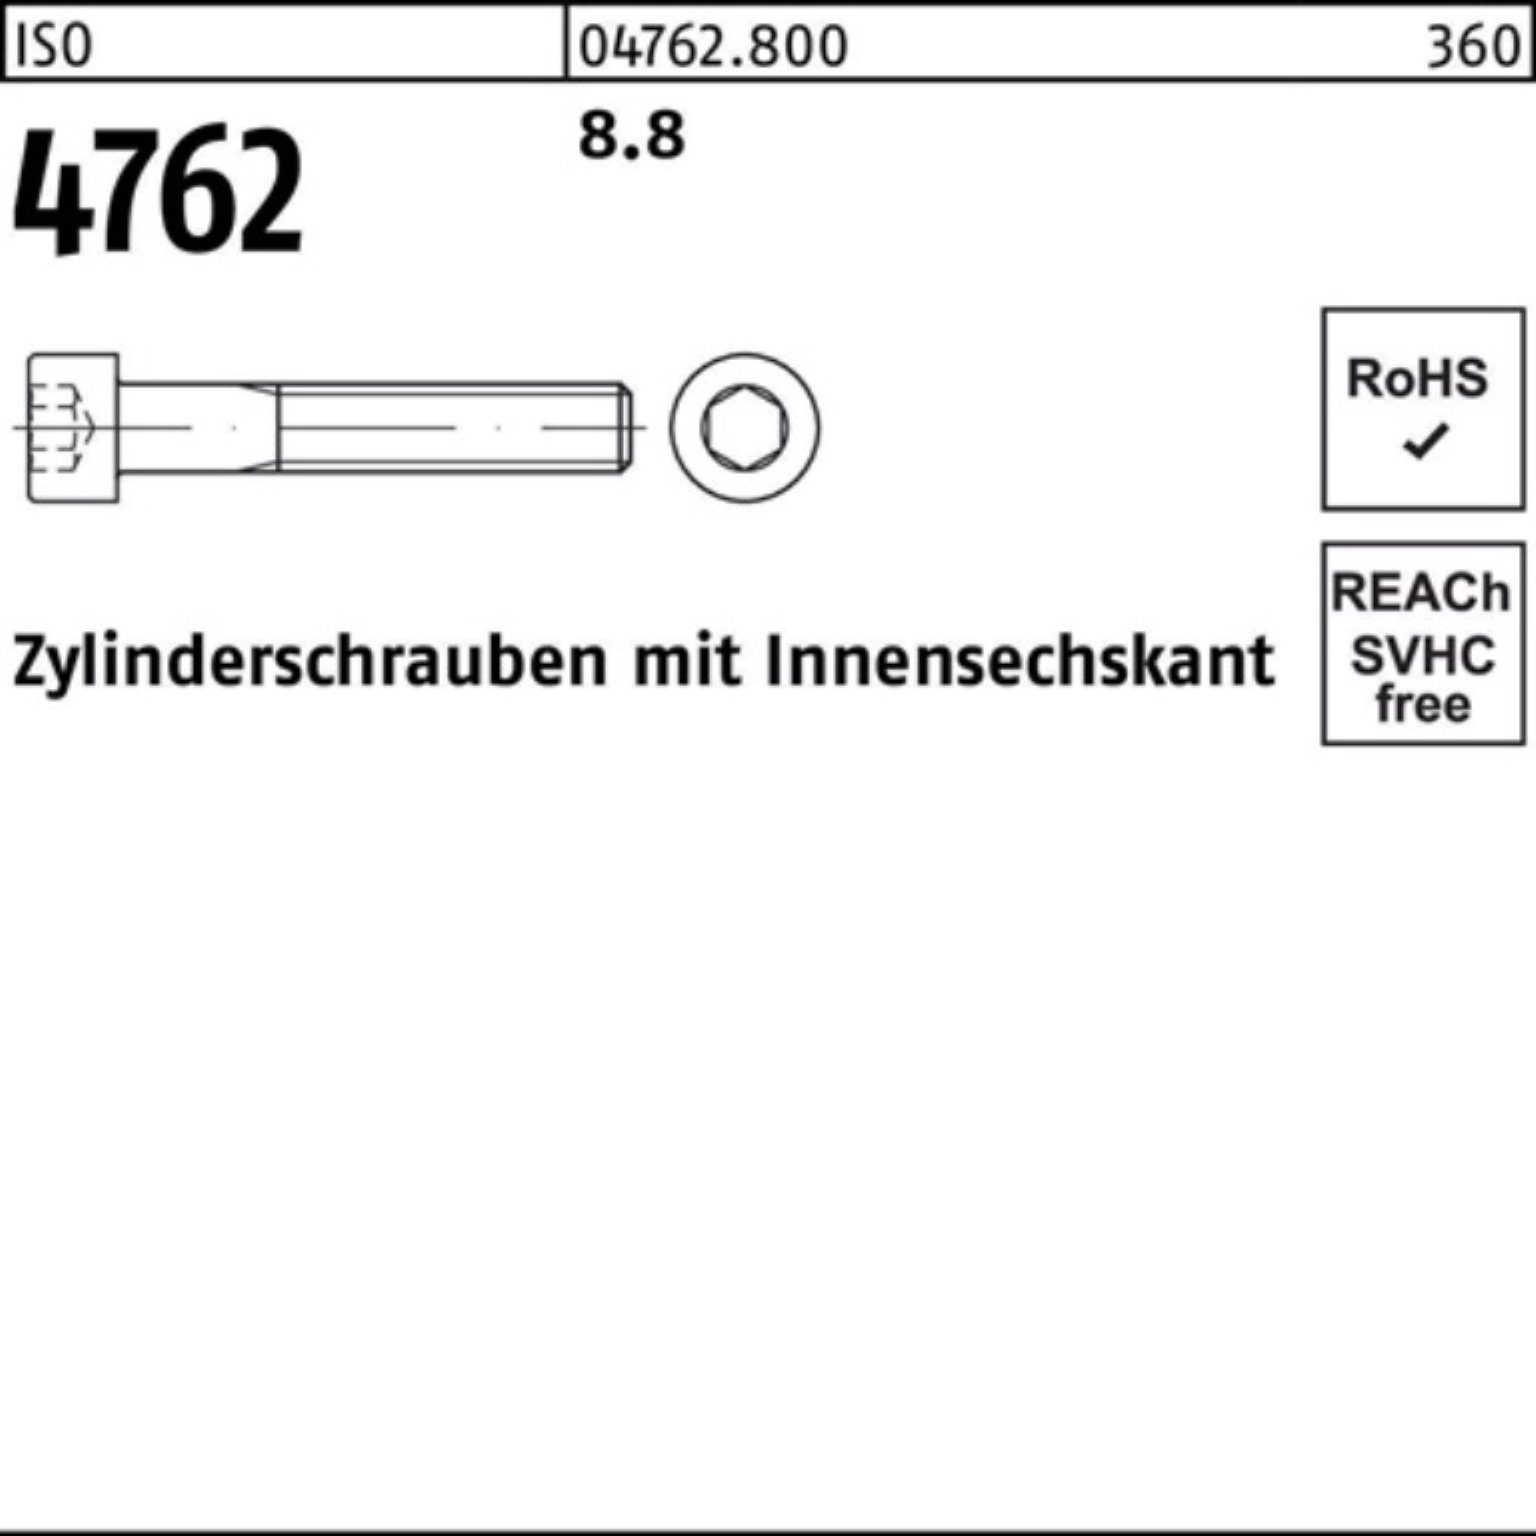 Reyher Zylinderschraube 100er 4762 M30x Zylinderschraube Pack 120 1 Stück Innen-6kt I ISO 8.8